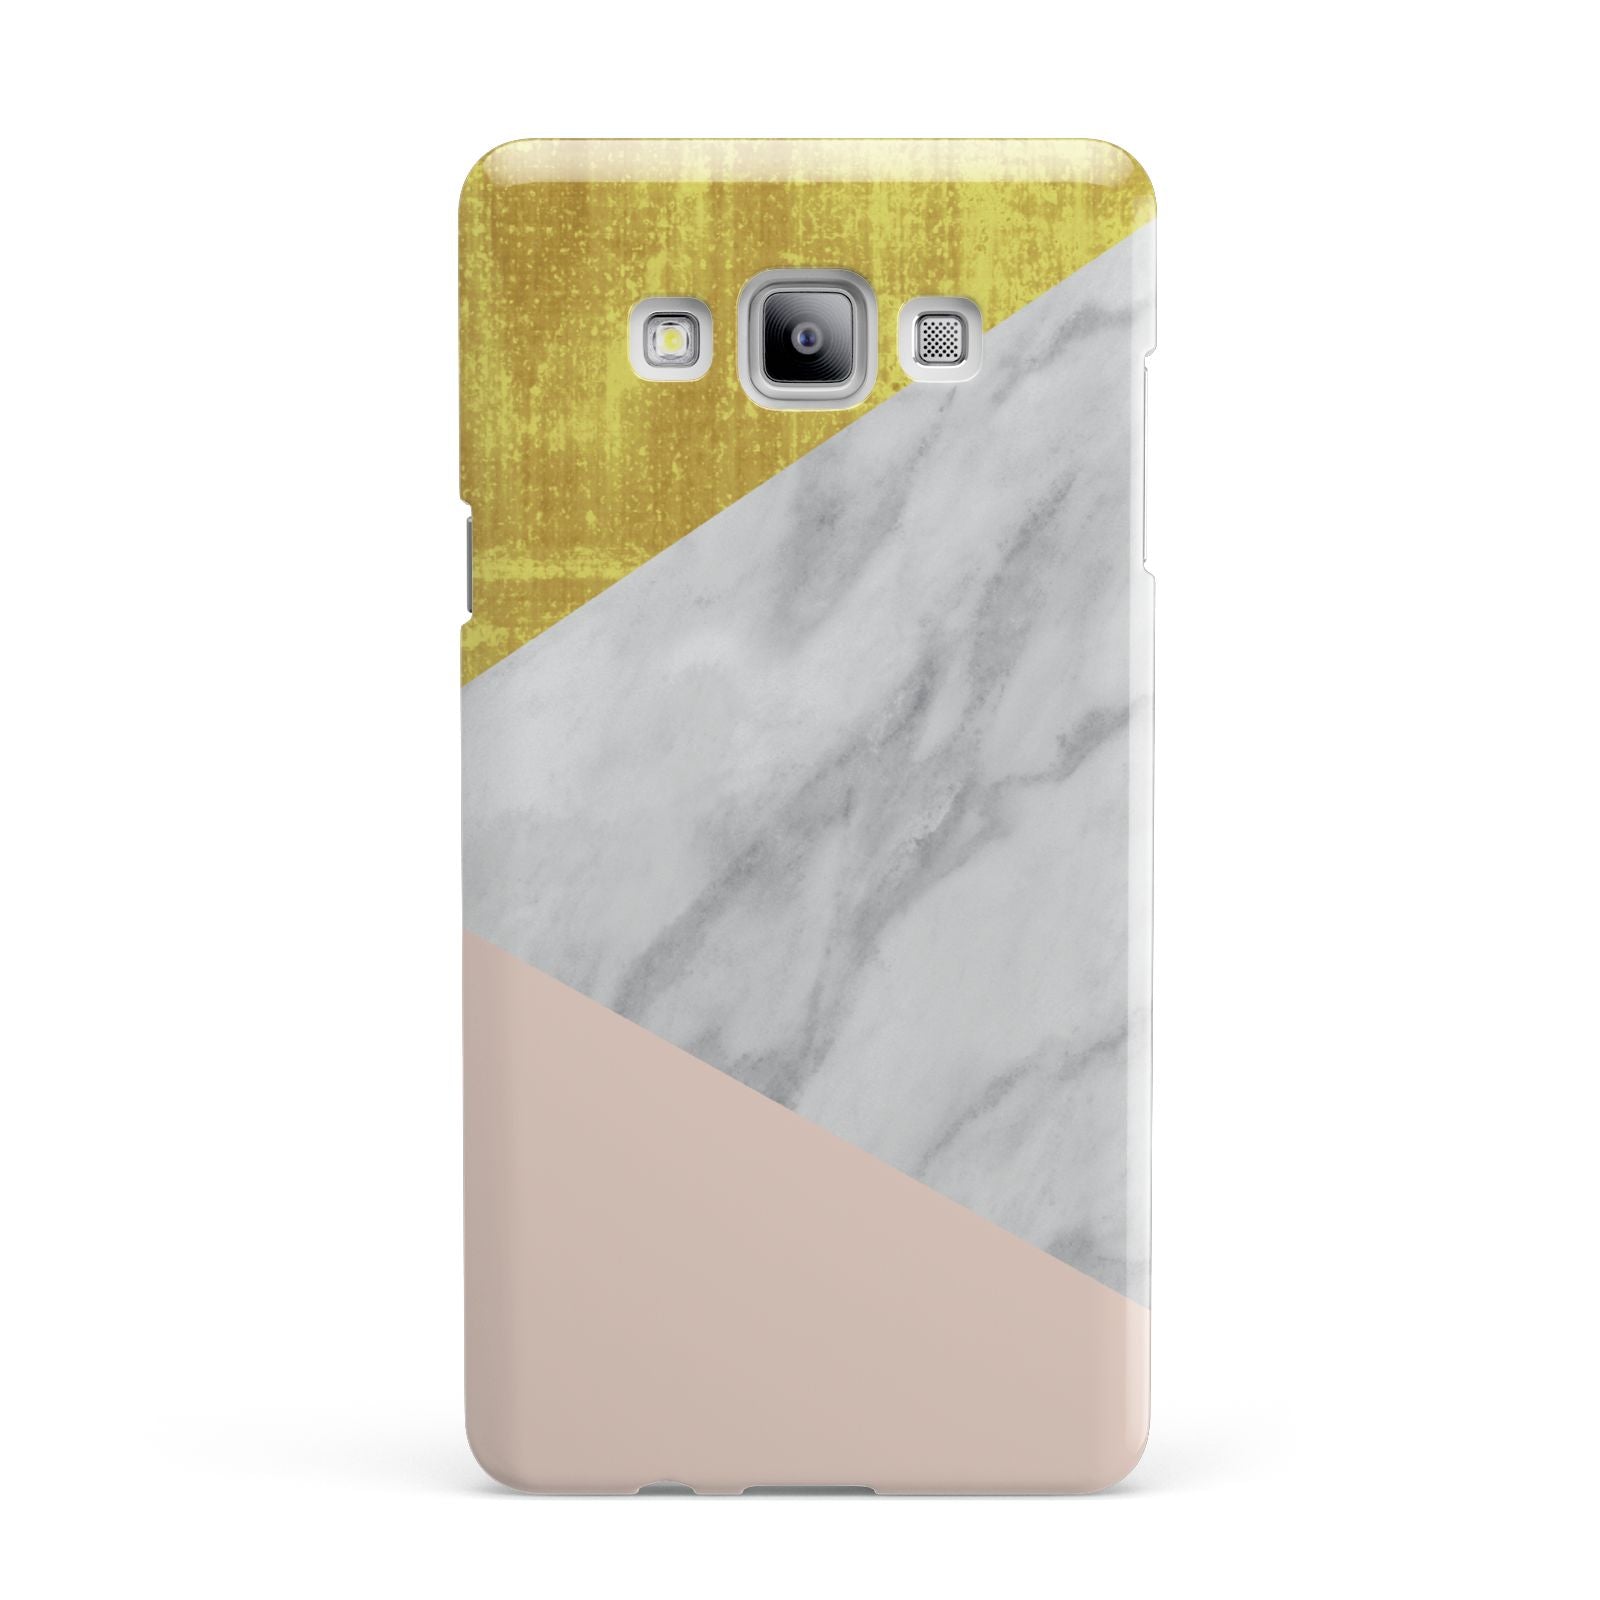 Marble White Gold Foil Peach Samsung Galaxy A7 2015 Case